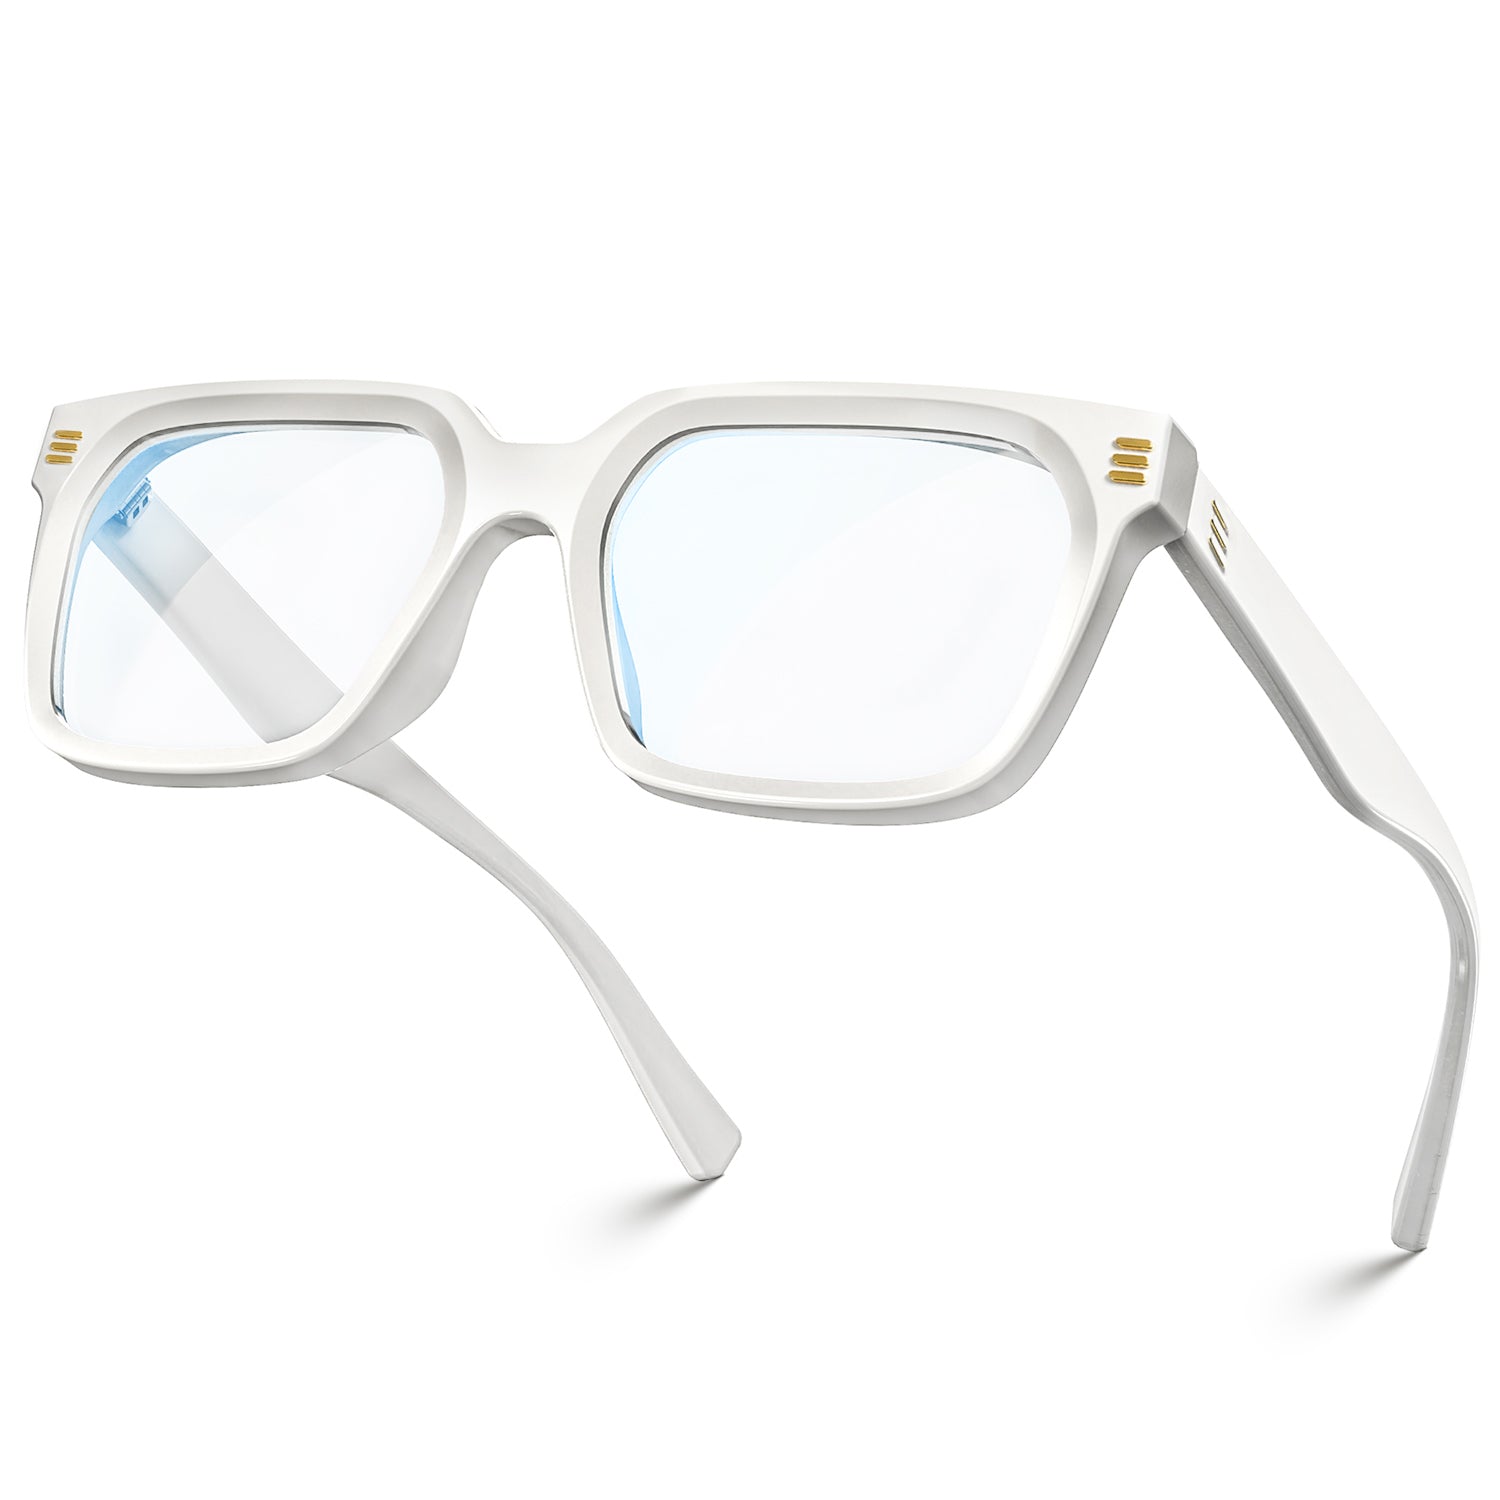 Louis Vuitton 1.1 Millionaires Sunglasses Silver  Louis vuitton glasses,  Fashion eye glasses, Fashion eyeglasses